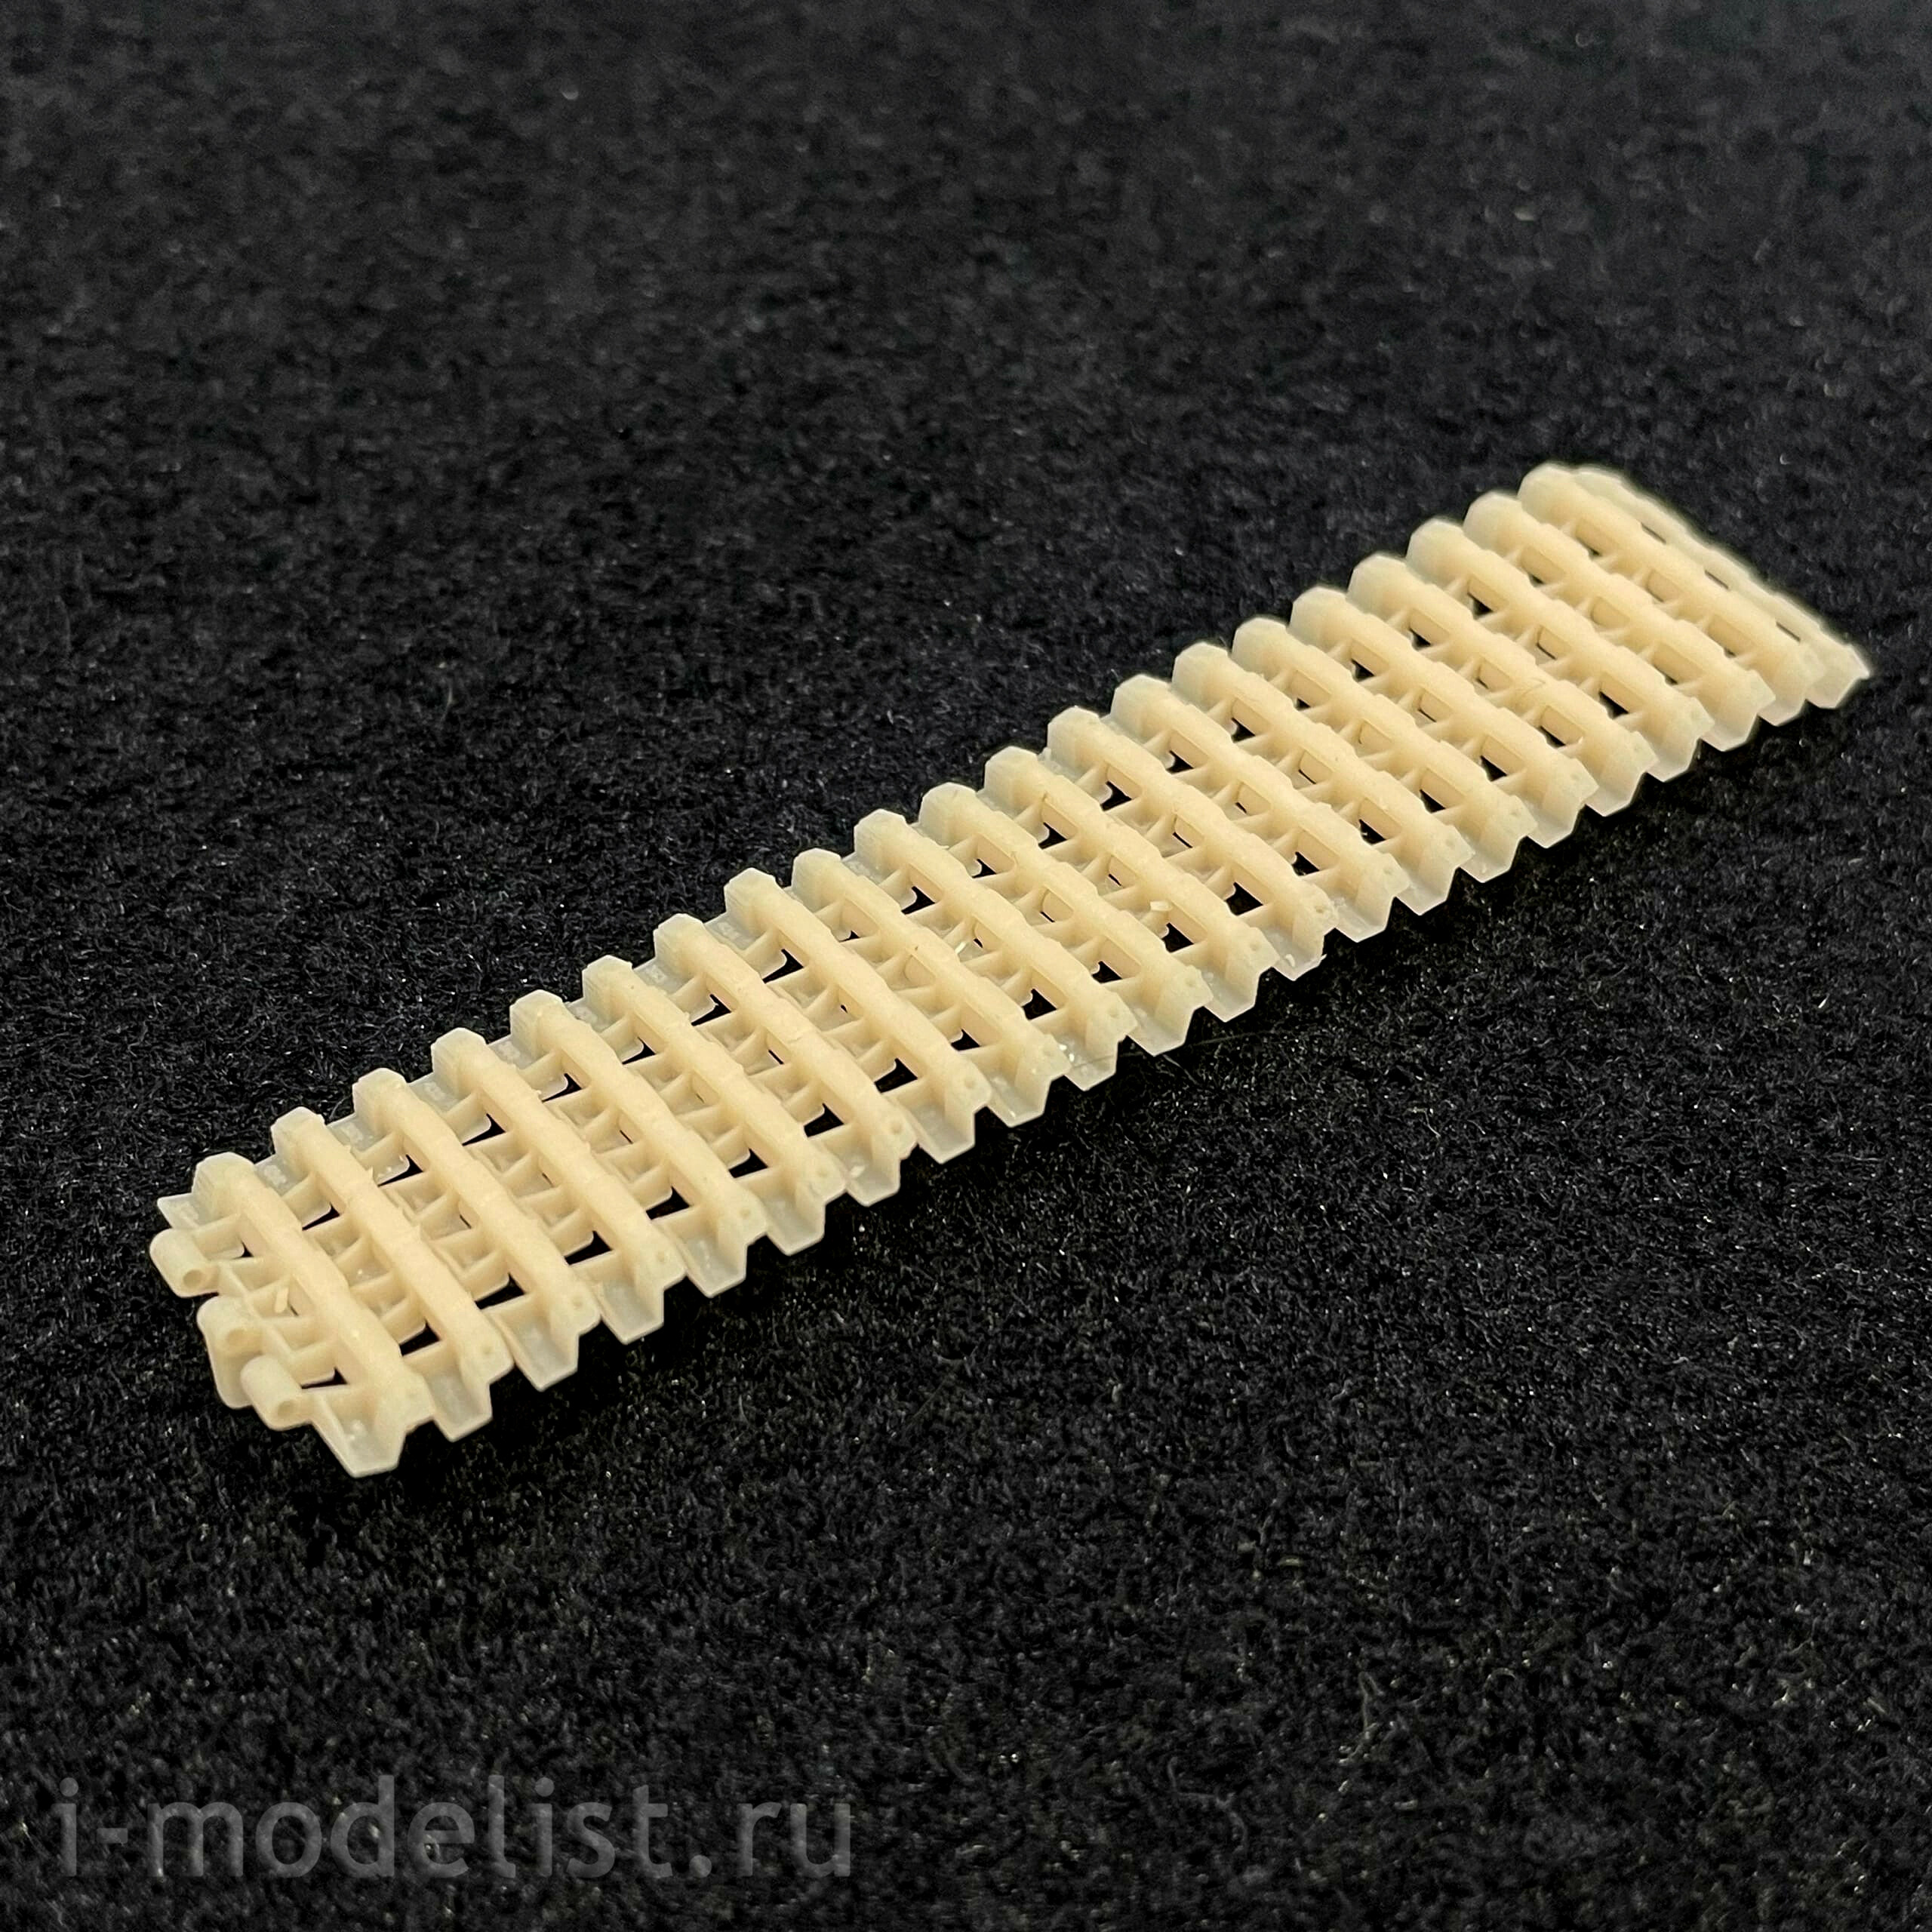 Im35114 Imodelist 1/35 Typesetting tracks on half-fingers for Ferdinand (3D printing)